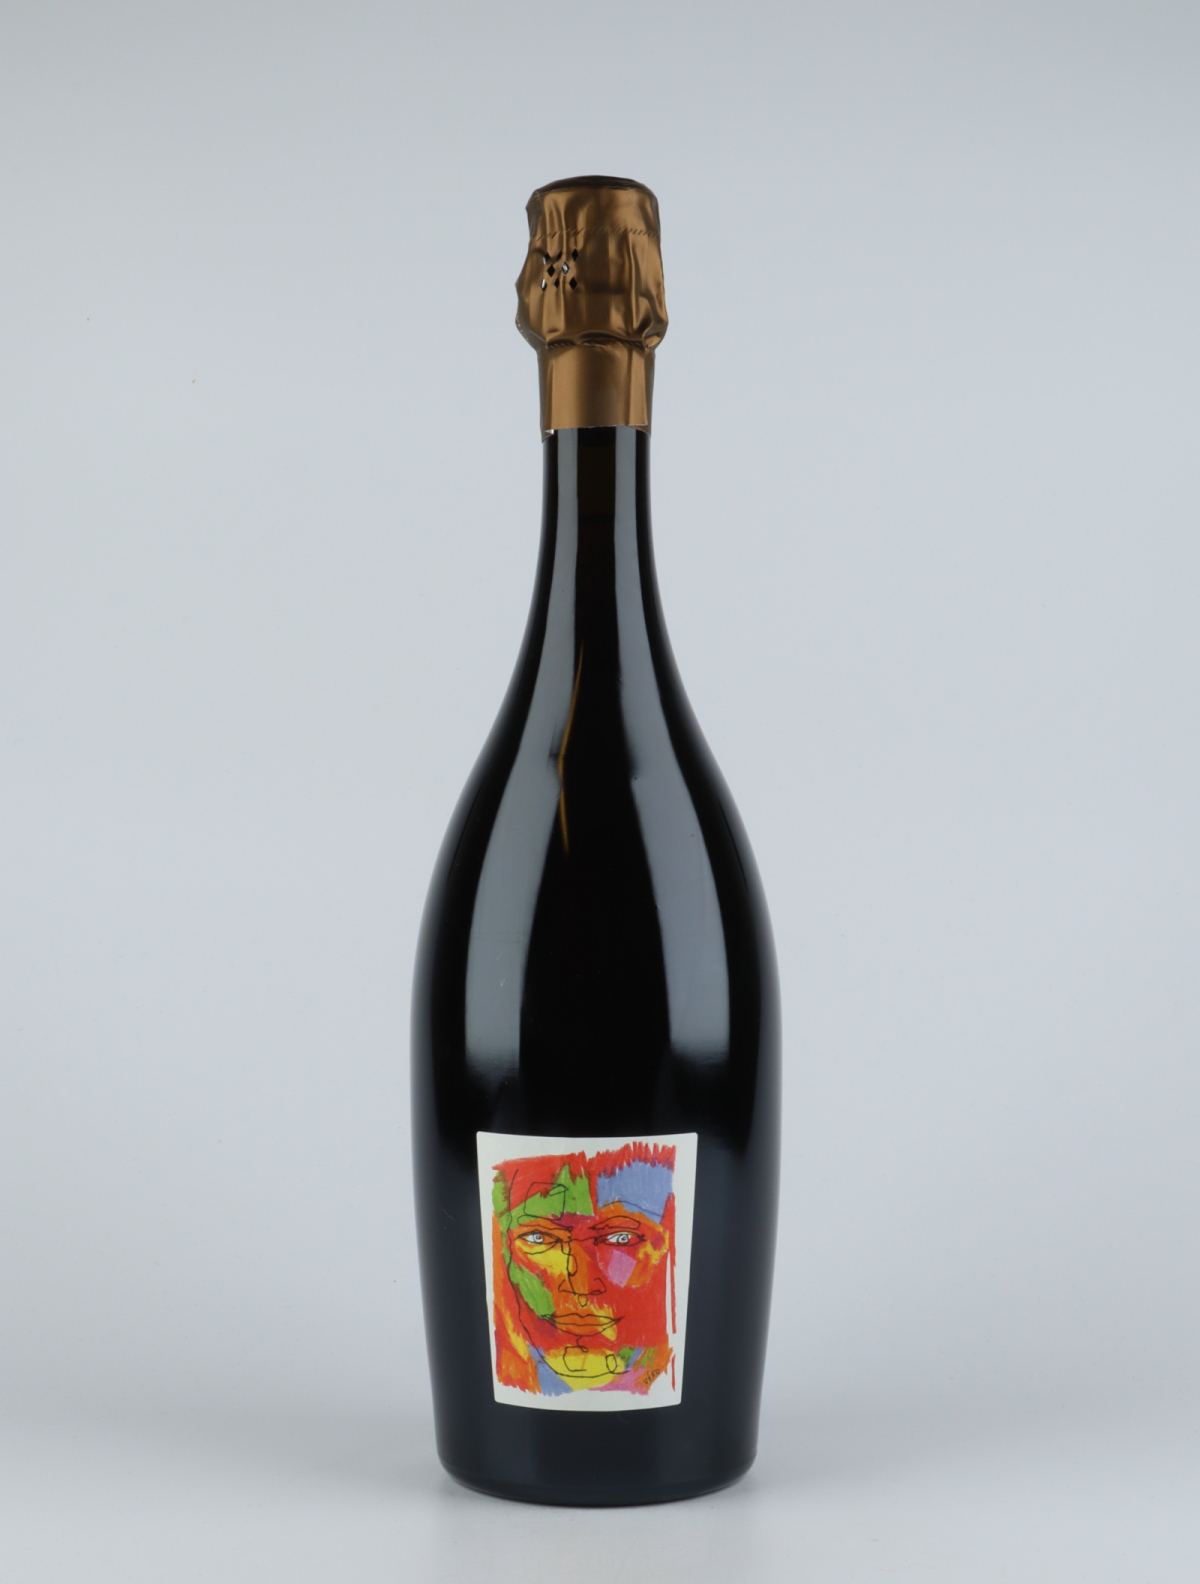 En flaske 2013 Logos Rosé Brut Nature Mousserende fra Stroebel, Champagne i Frankrig